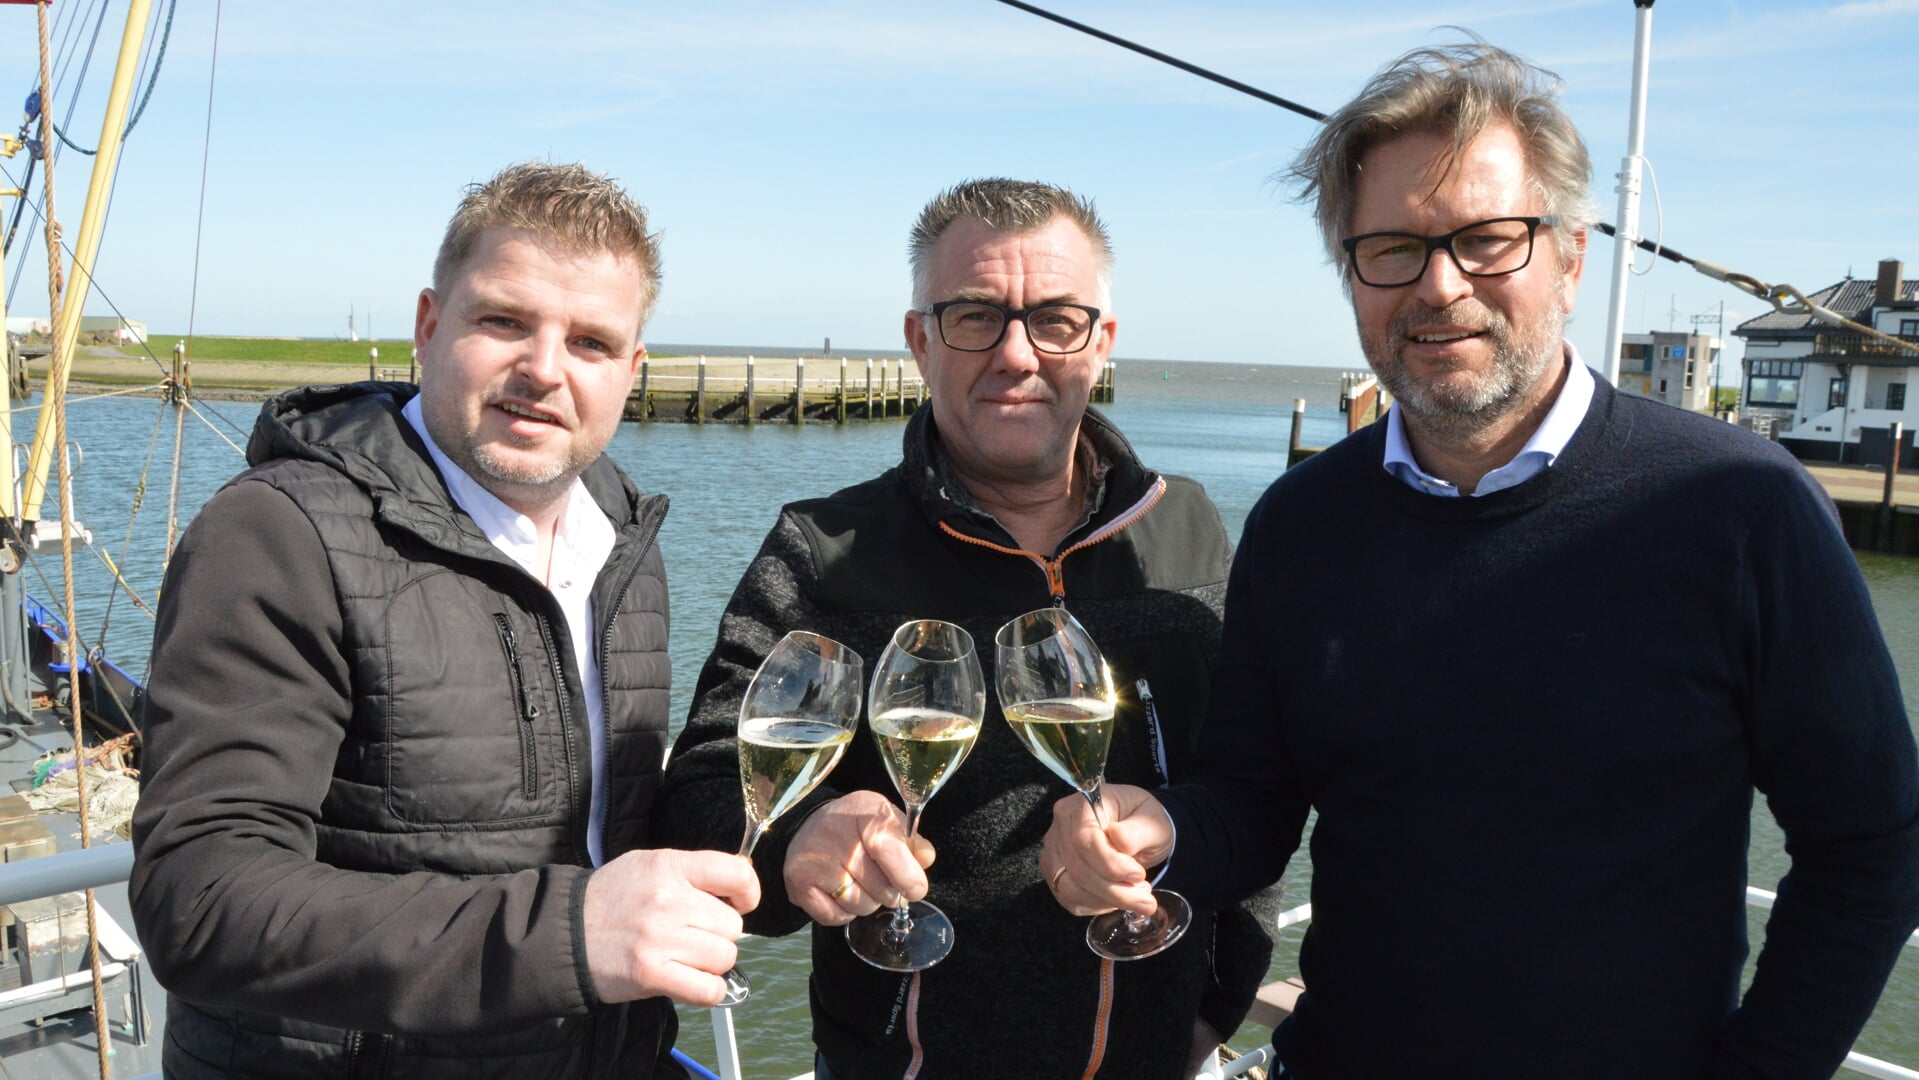 Boy Schuiling, Martin Zeeman en Arwin Touw, organisatoren van Smaakmakers Oudeschild